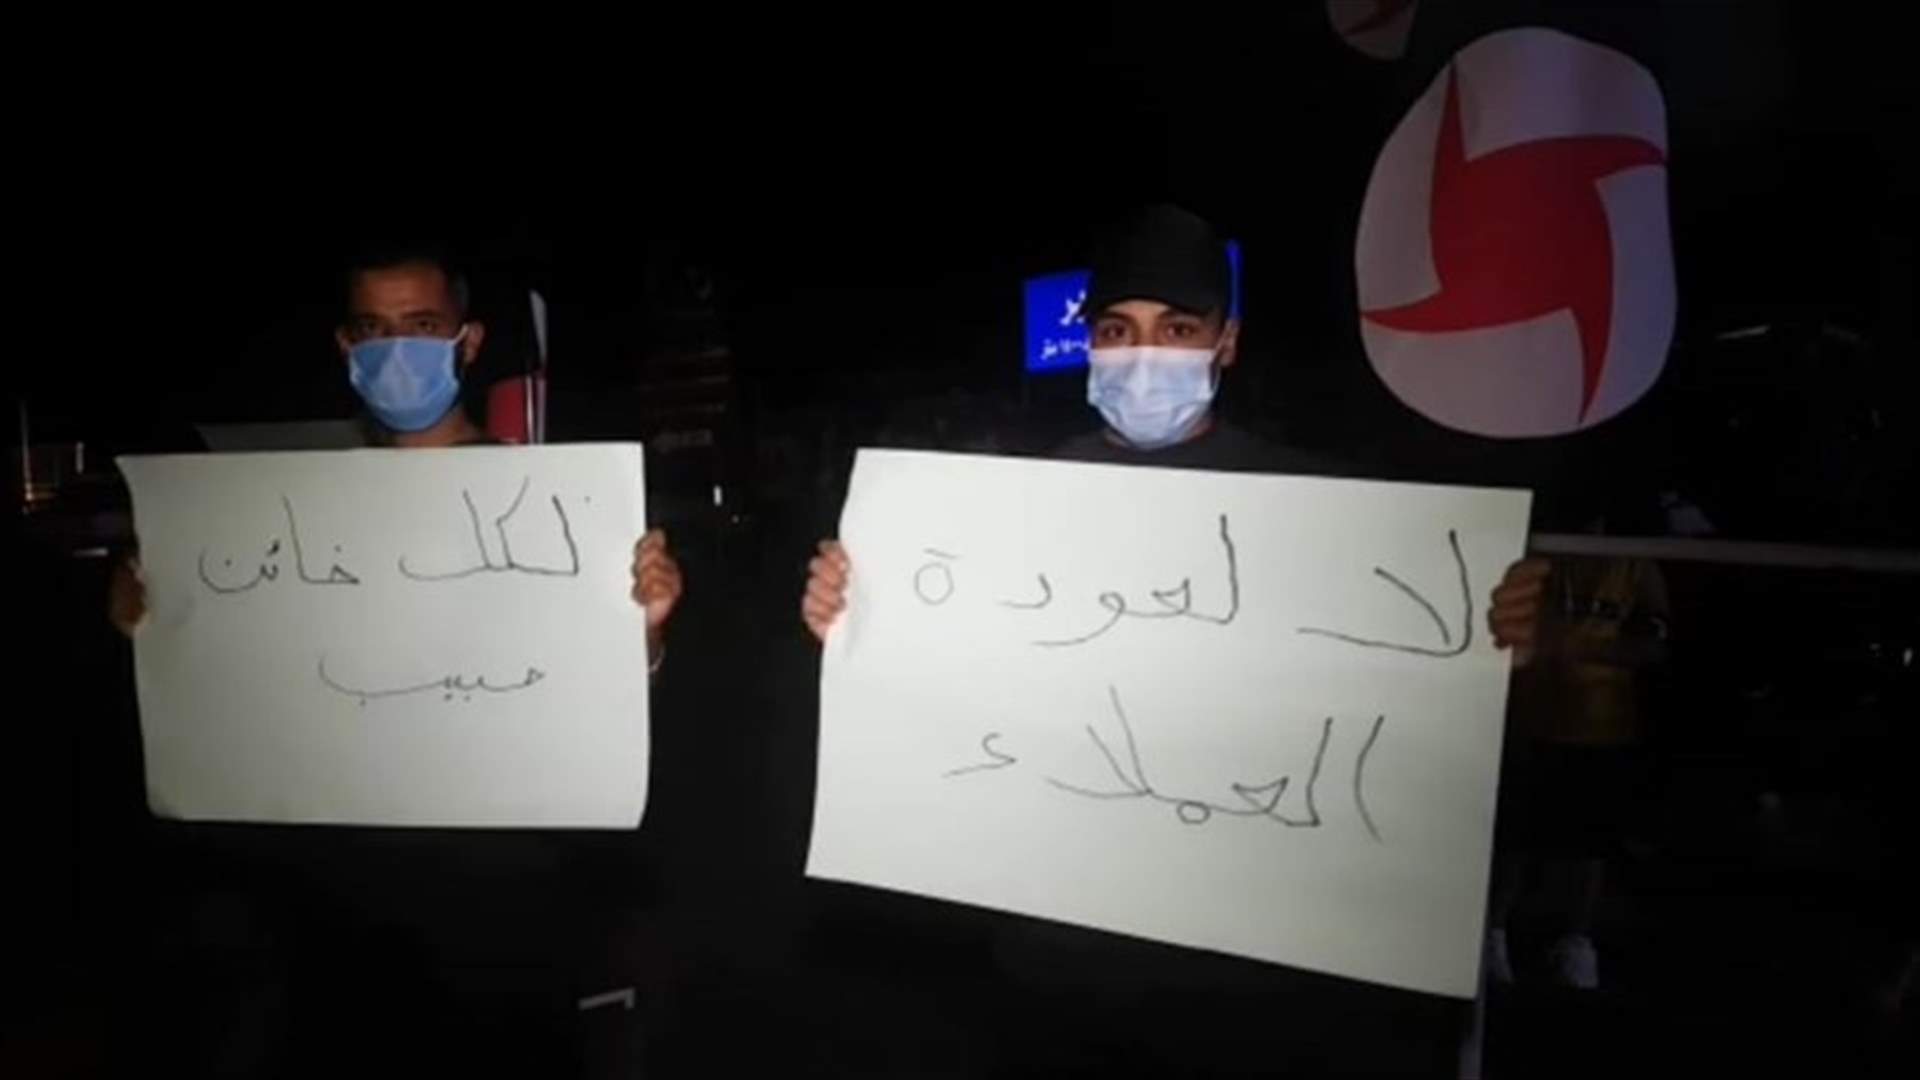 وقفة احتجاجية لمديرية حبوش في الحزب السوري القومي الاجتماعي